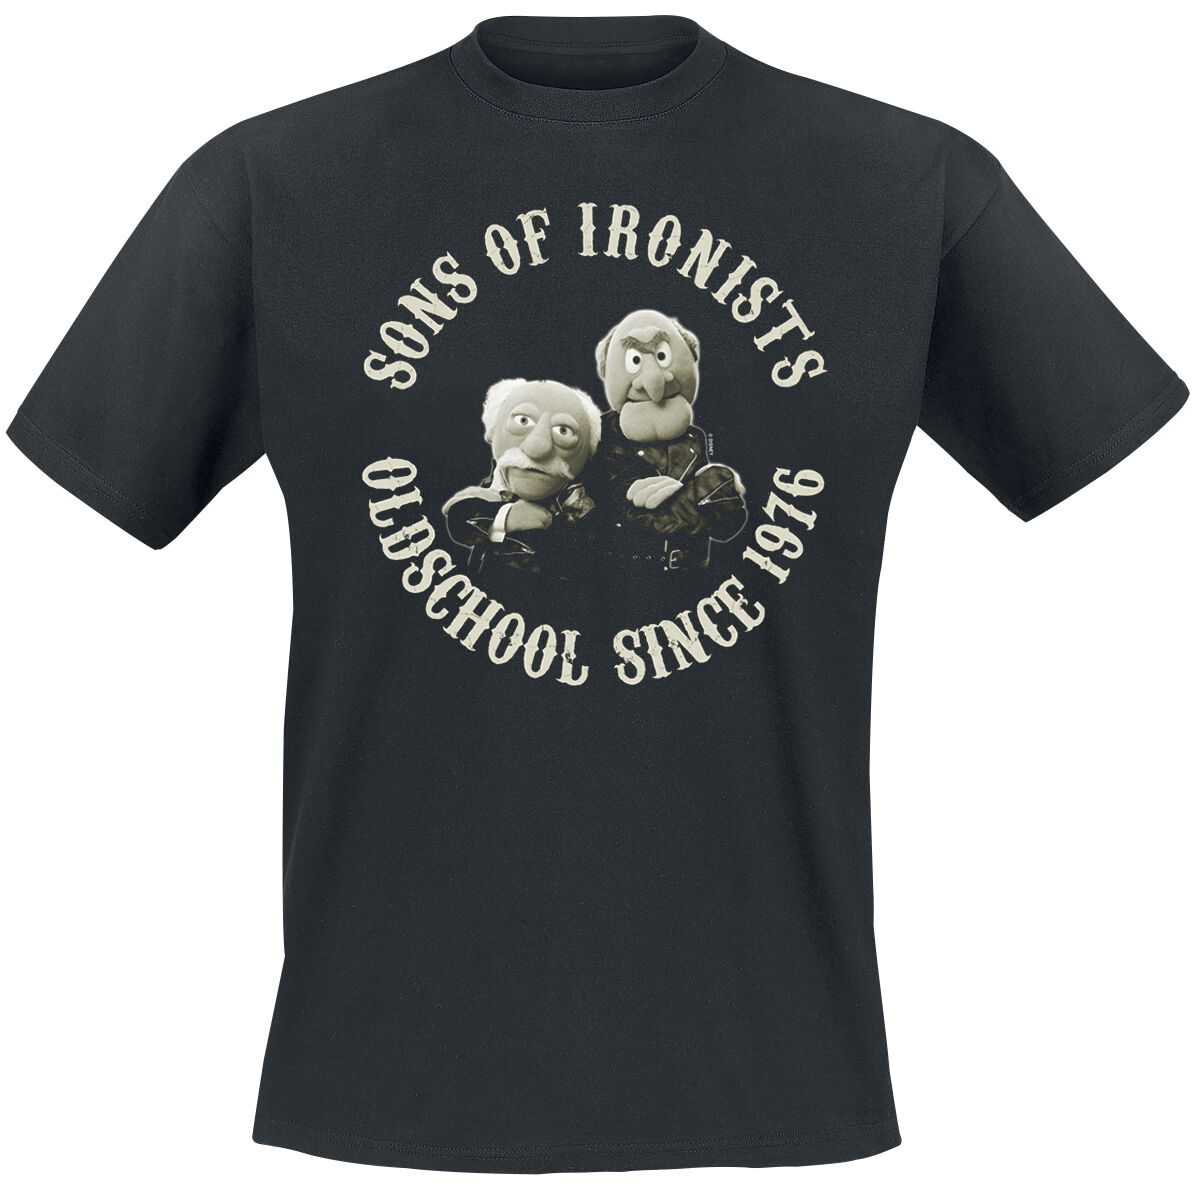 Die Muppets T-Shirt - Sons Of Ironists - M bis 5XL - für Männer - Größe L - schwarz  - Lizenzierter Fanartikel